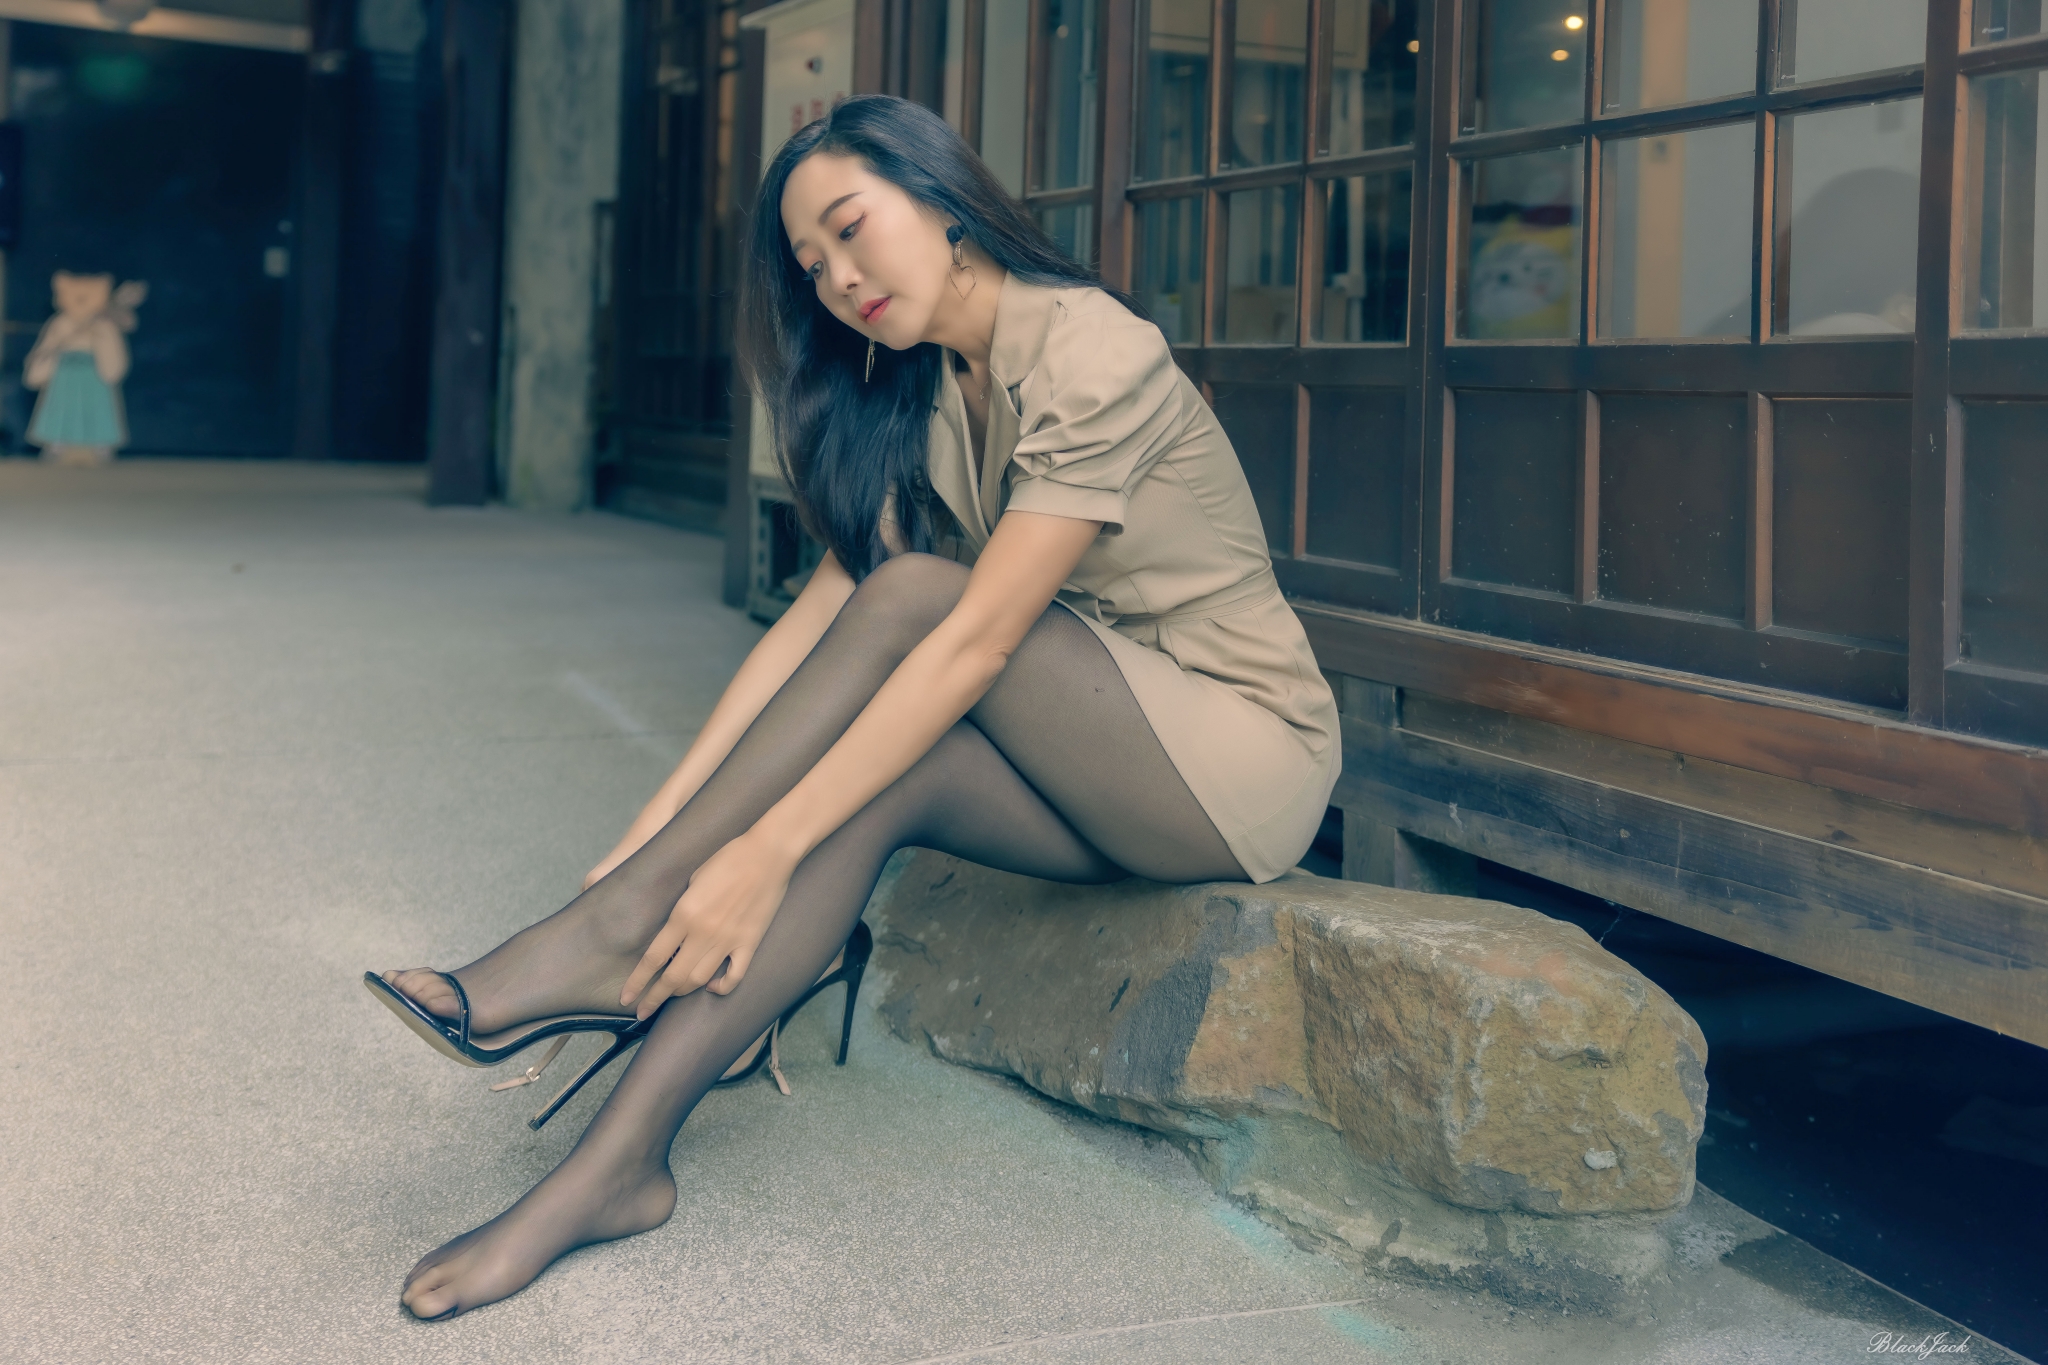 【網路收集】台灣美腿女郎-Yen Liang 氣質美女外拍寫實 - 貼圖 - 絲襪美腿 -